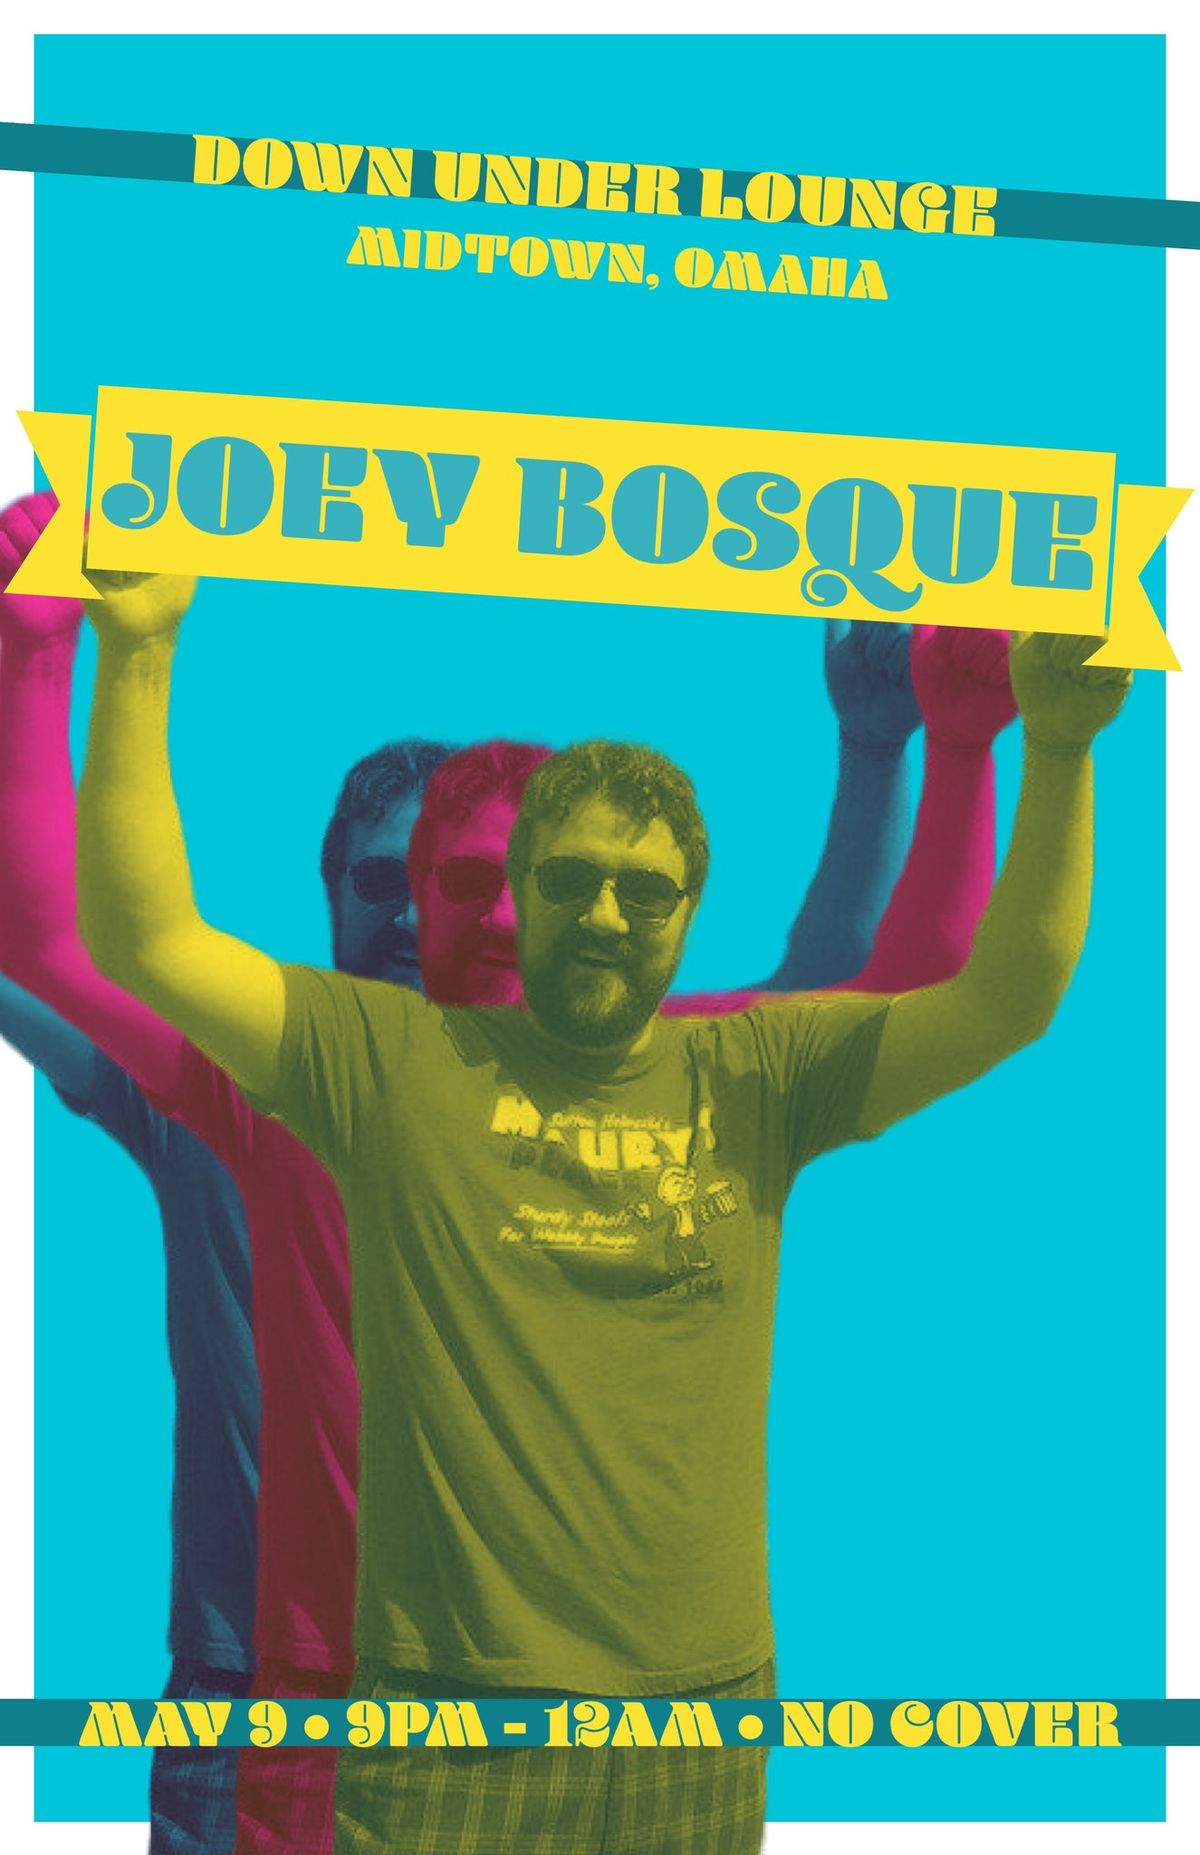 Joey Bosque @ The DU